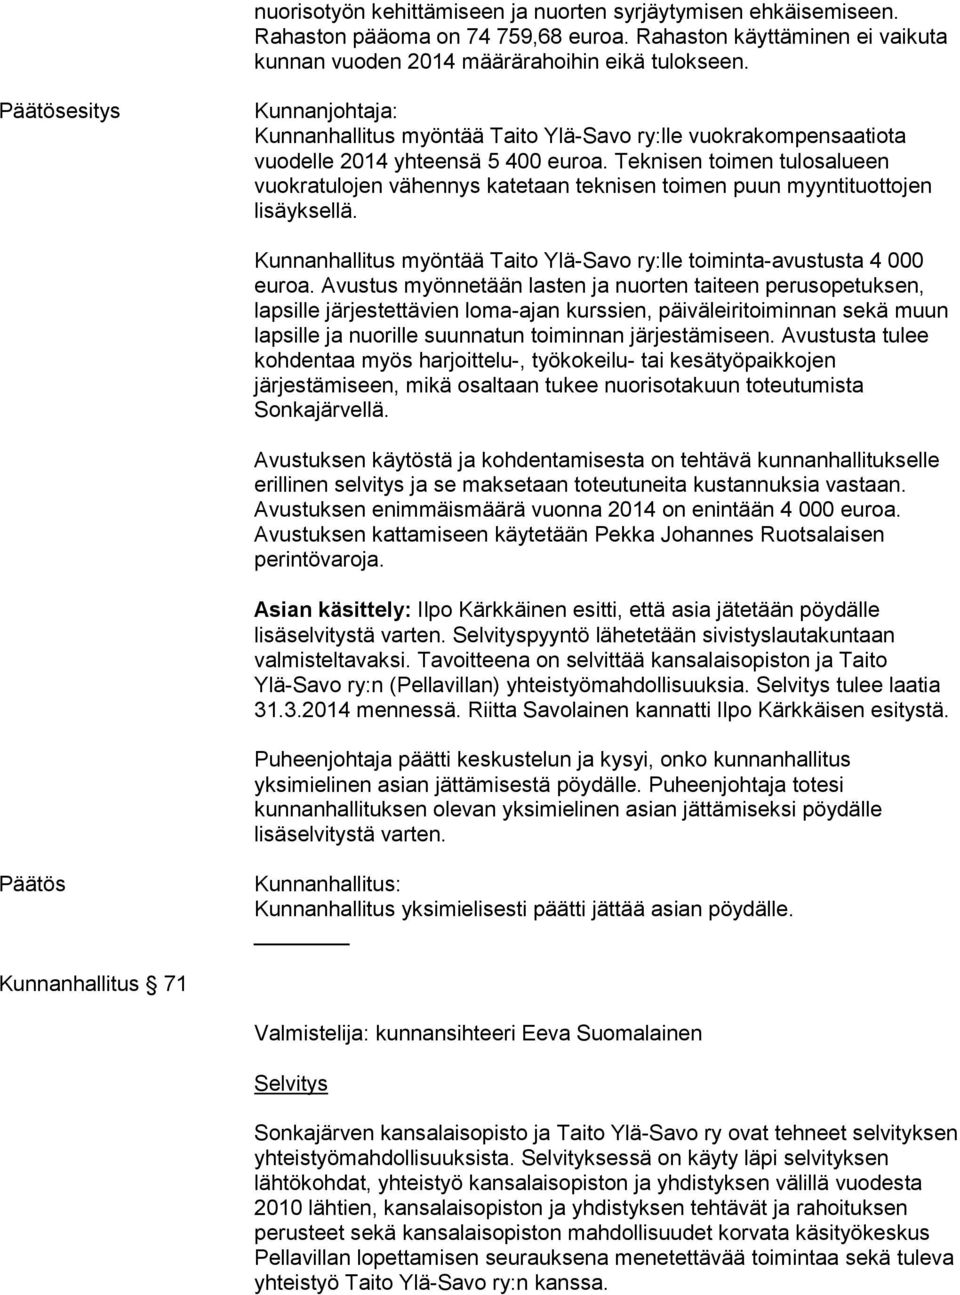 Teknisen toimen tulosalueen vuokratulojen vähennys katetaan teknisen toimen puun myyntituottojen lisäyksellä. Kunnanhallitus myöntää Taito Ylä-Savo ry:lle toiminta-avustusta 4 000 euroa.